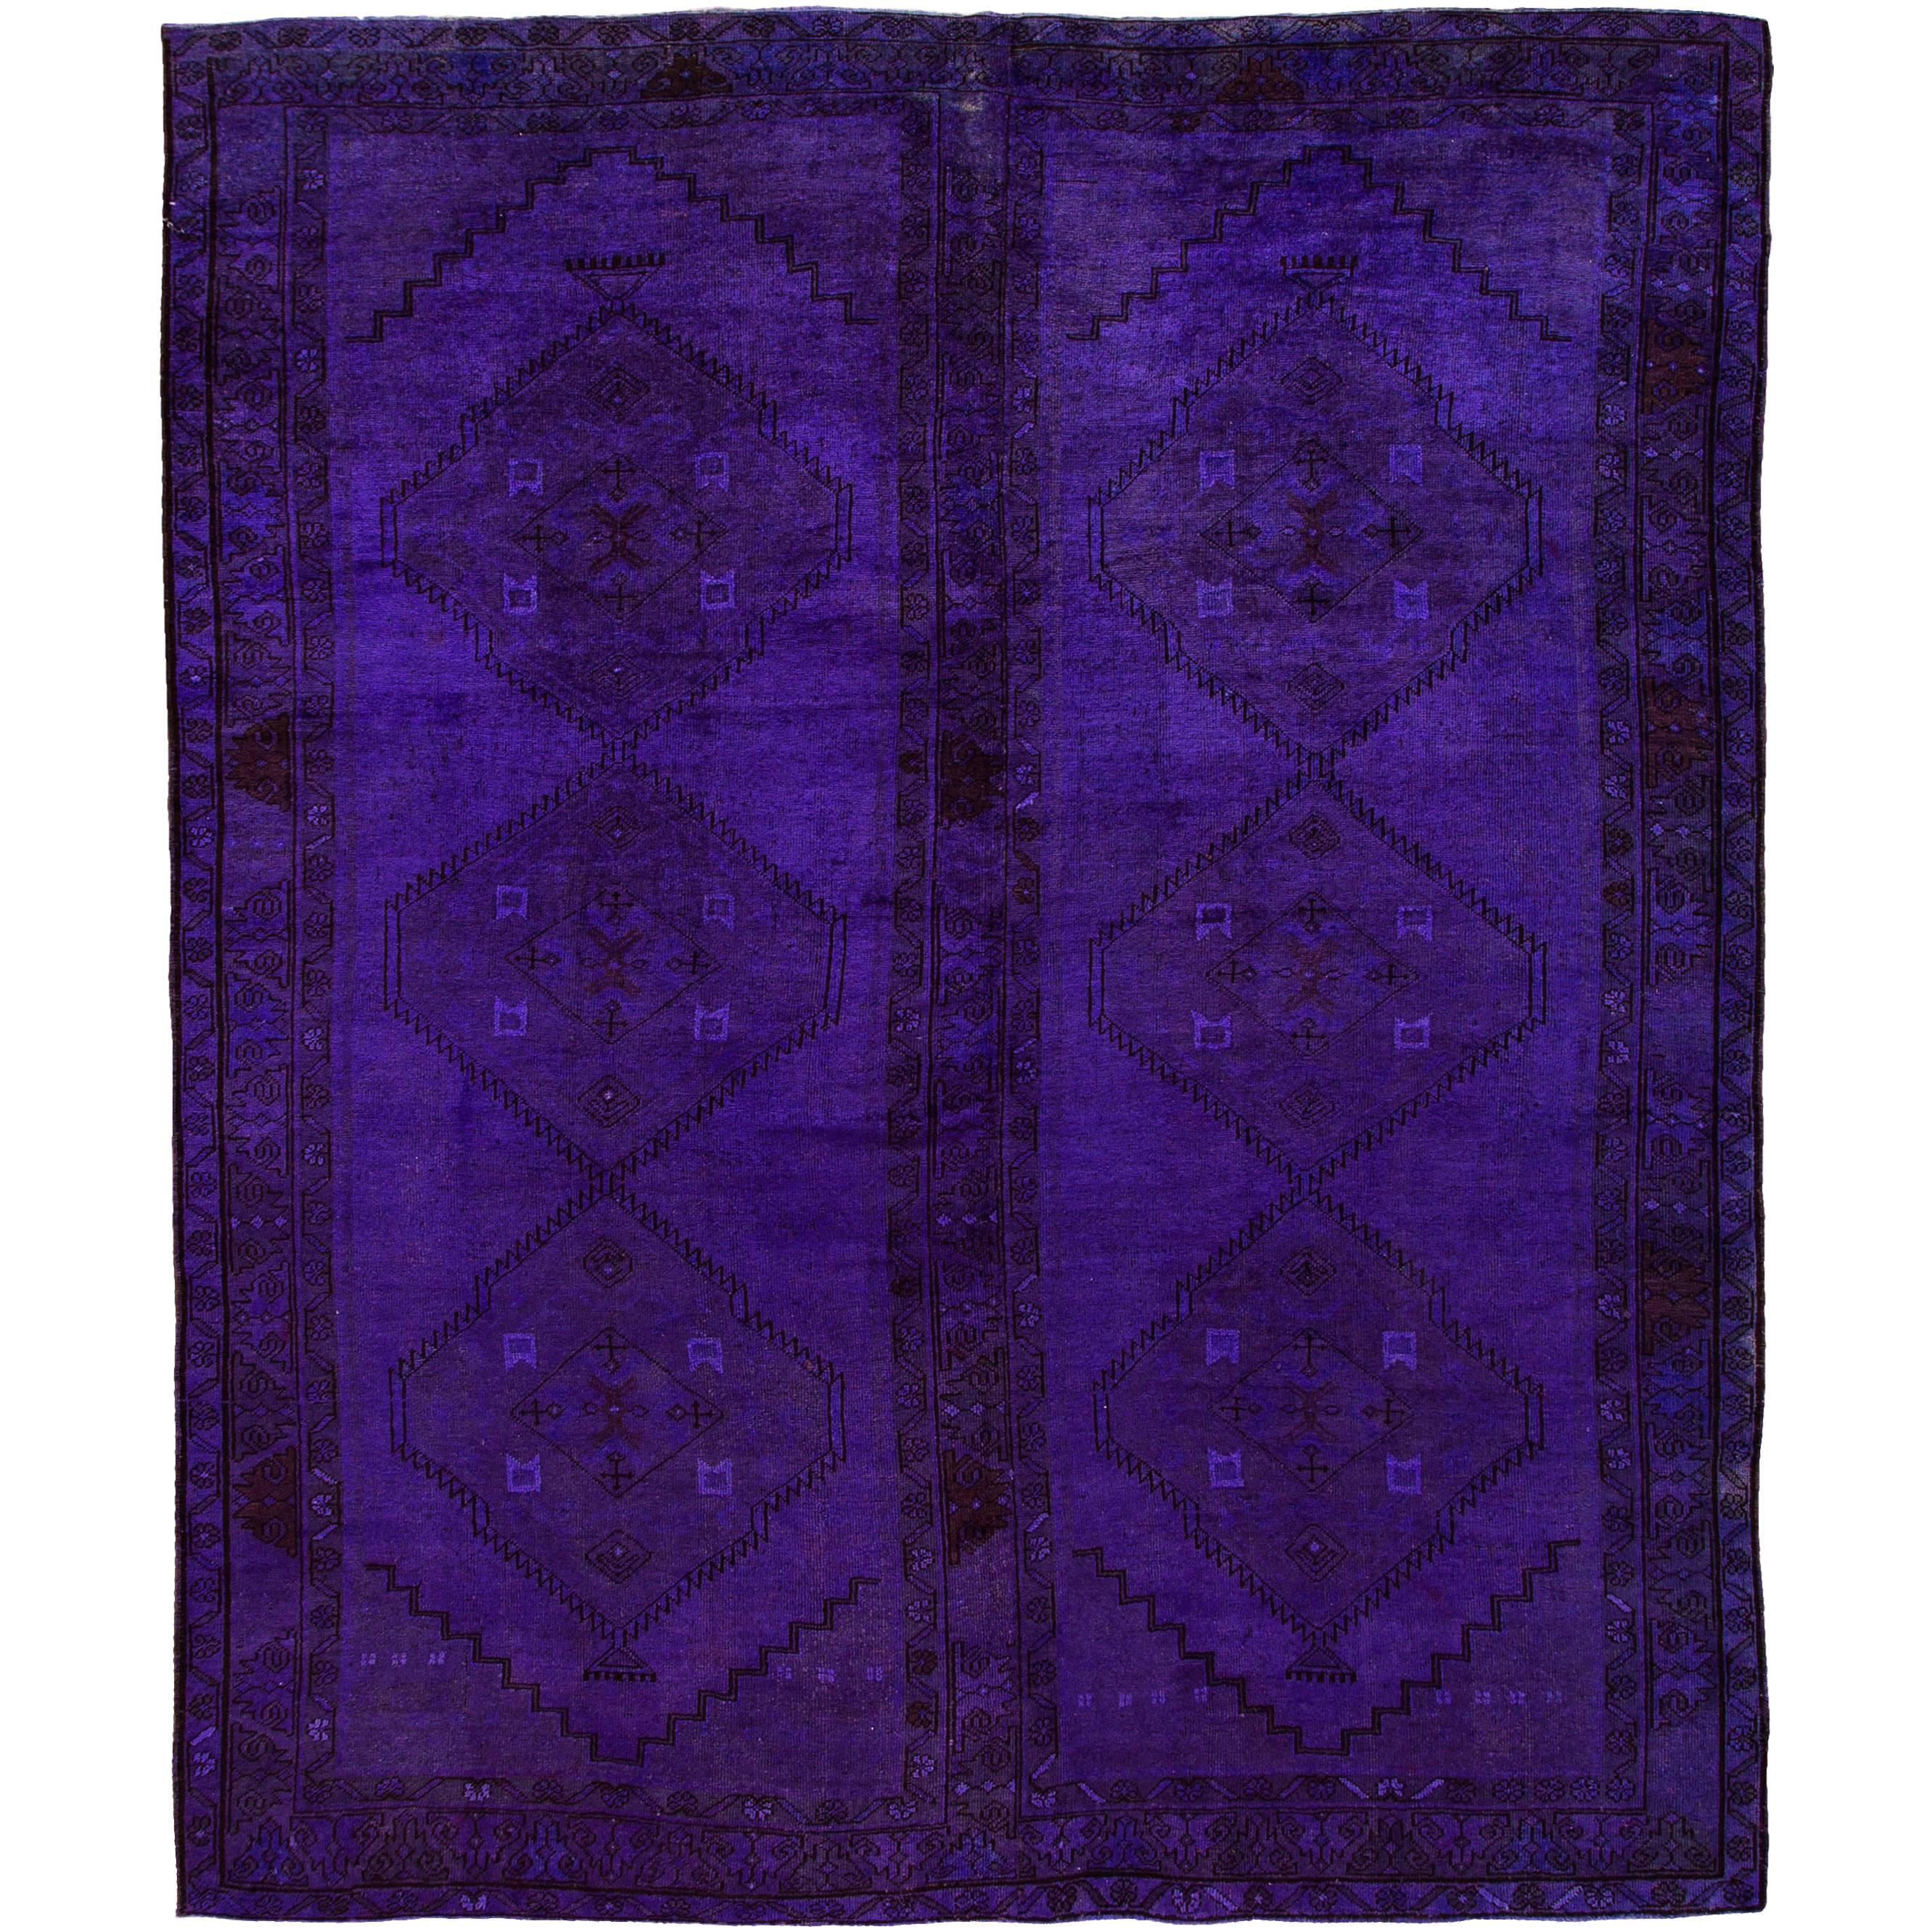 Lila Overdyed Teppich im Khotan-Stil in Violett